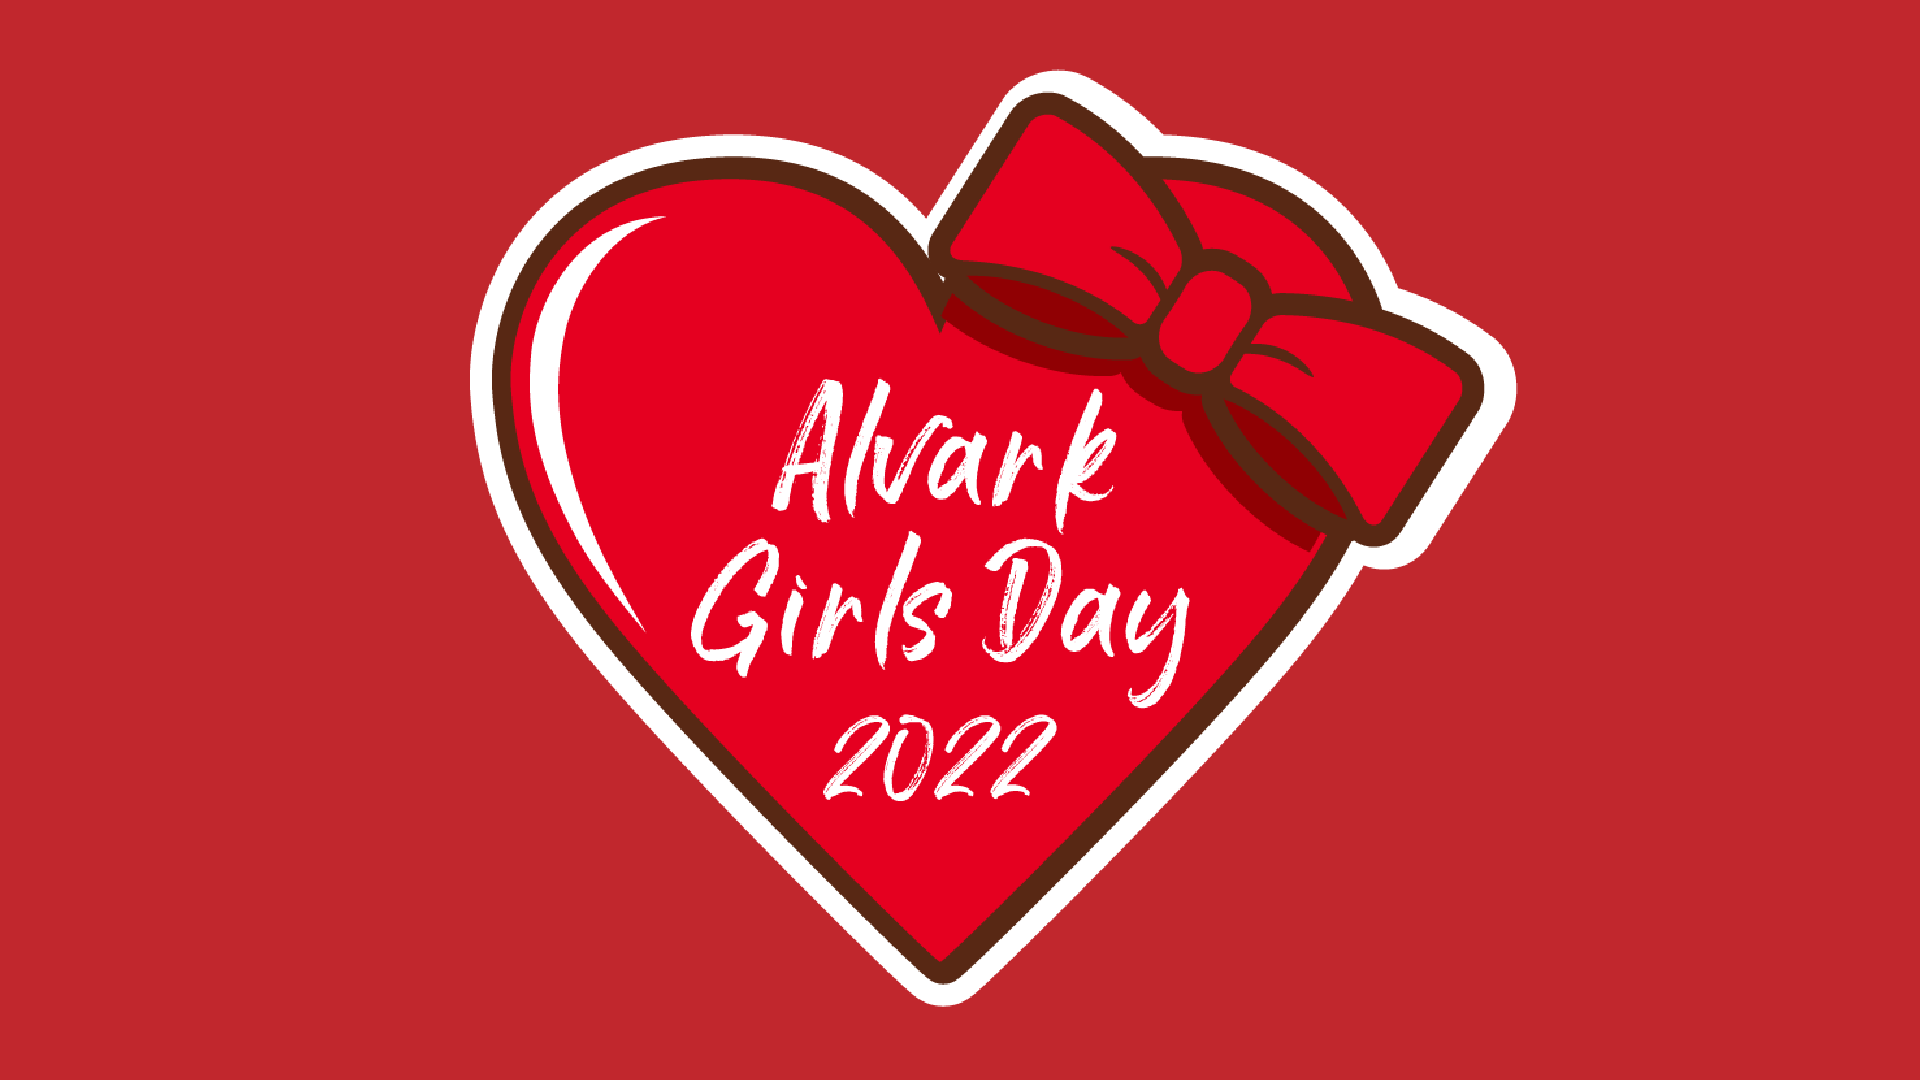 Alvark Girls Day2022開催！